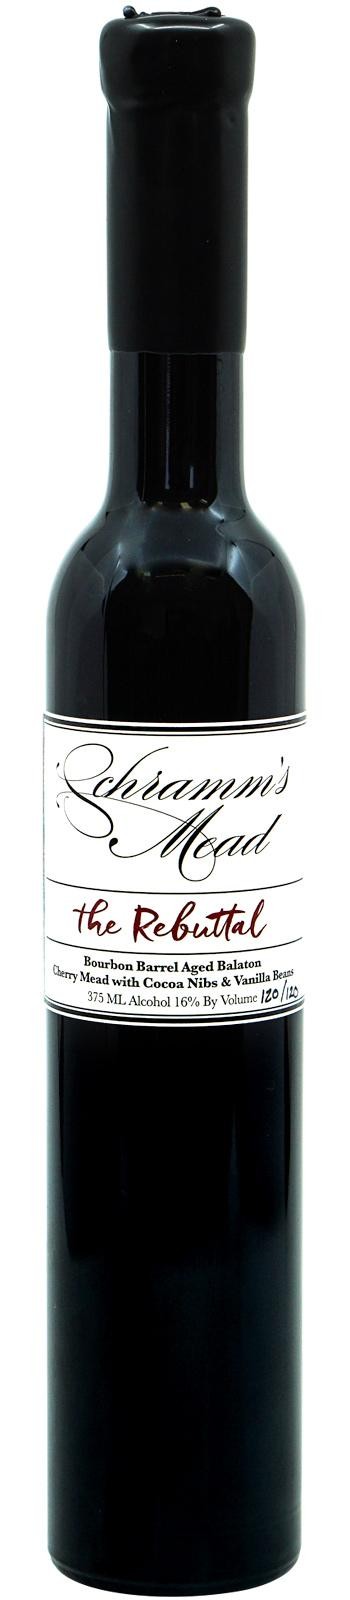 Schramm's Mead - The Rebuttal (375ml)